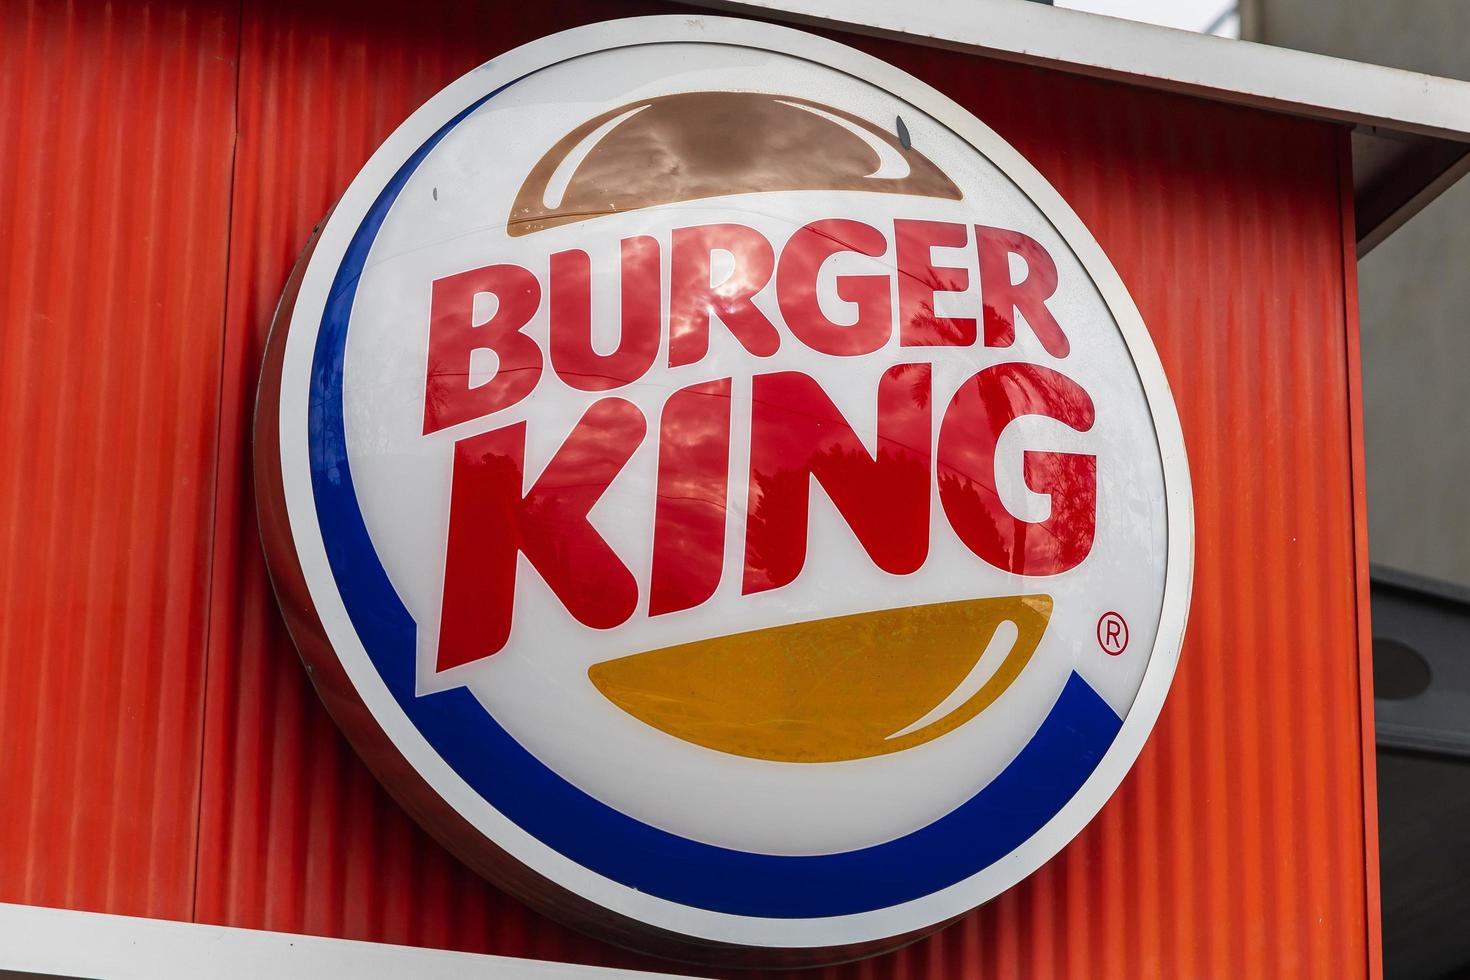 دریافت نمایندگی برگر کینگ در ترکیه Burger King